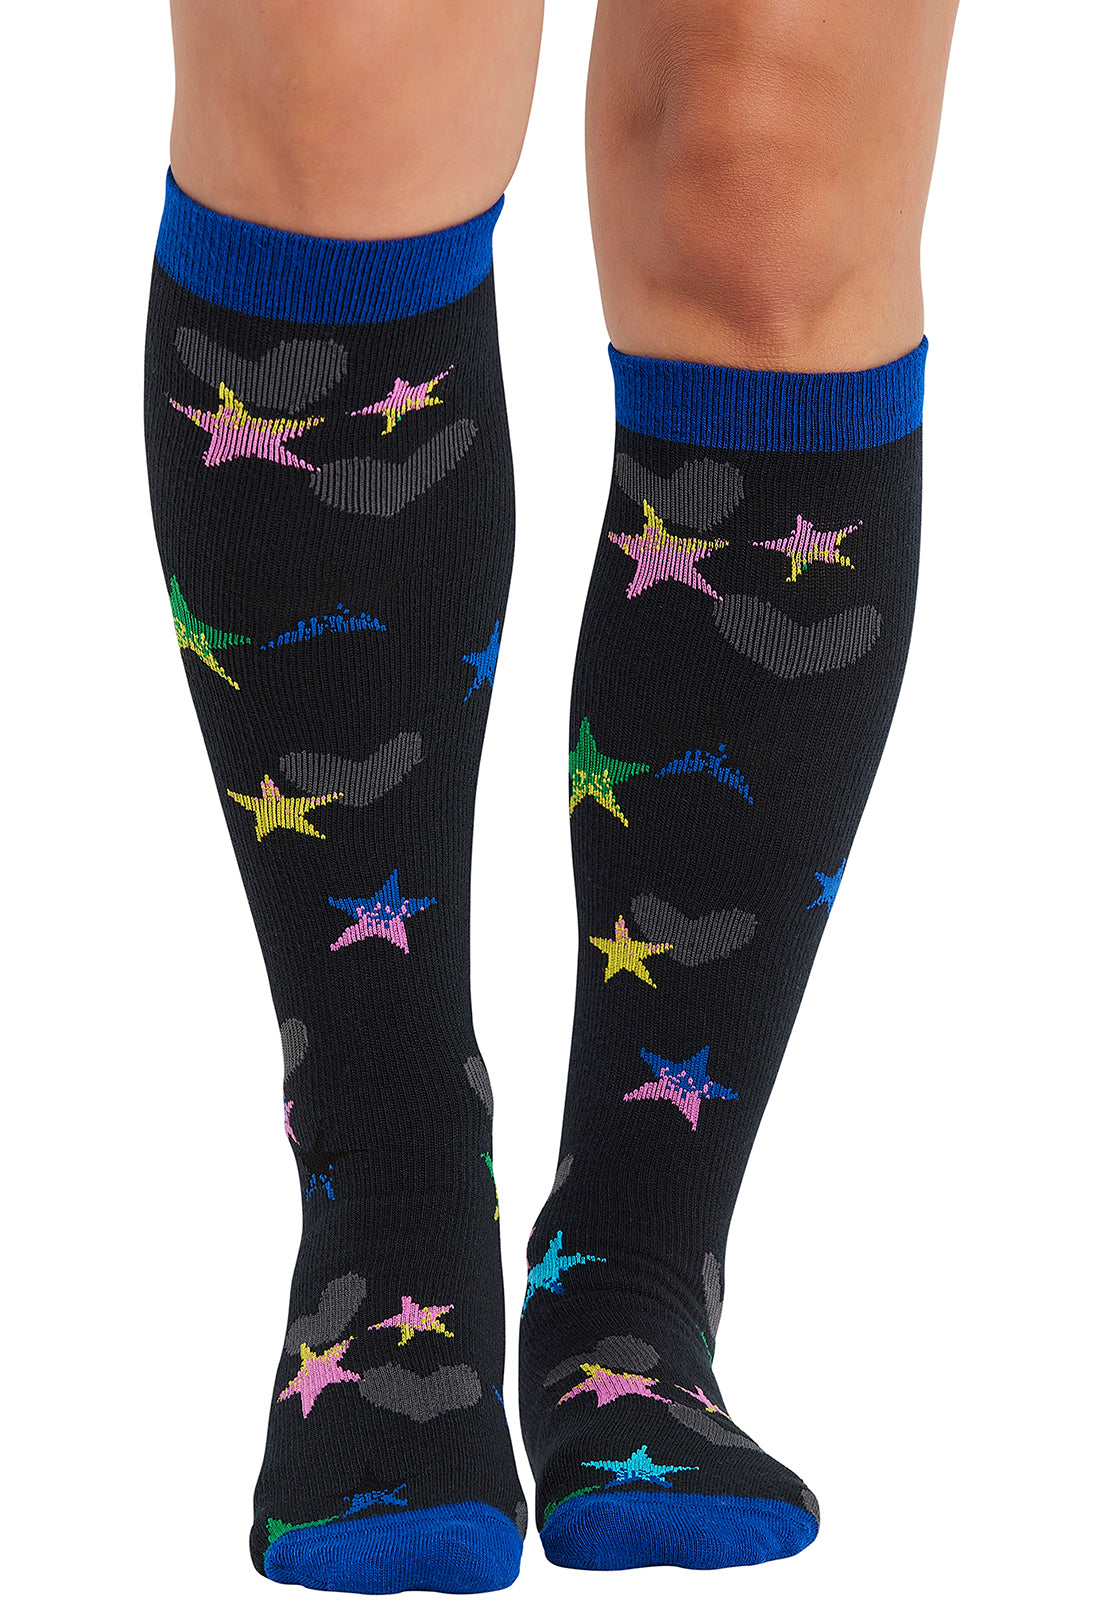 Regular Fit - Compression Socks 10-15mmHg Compression Socks Cherokee Legwear Loving Stars  